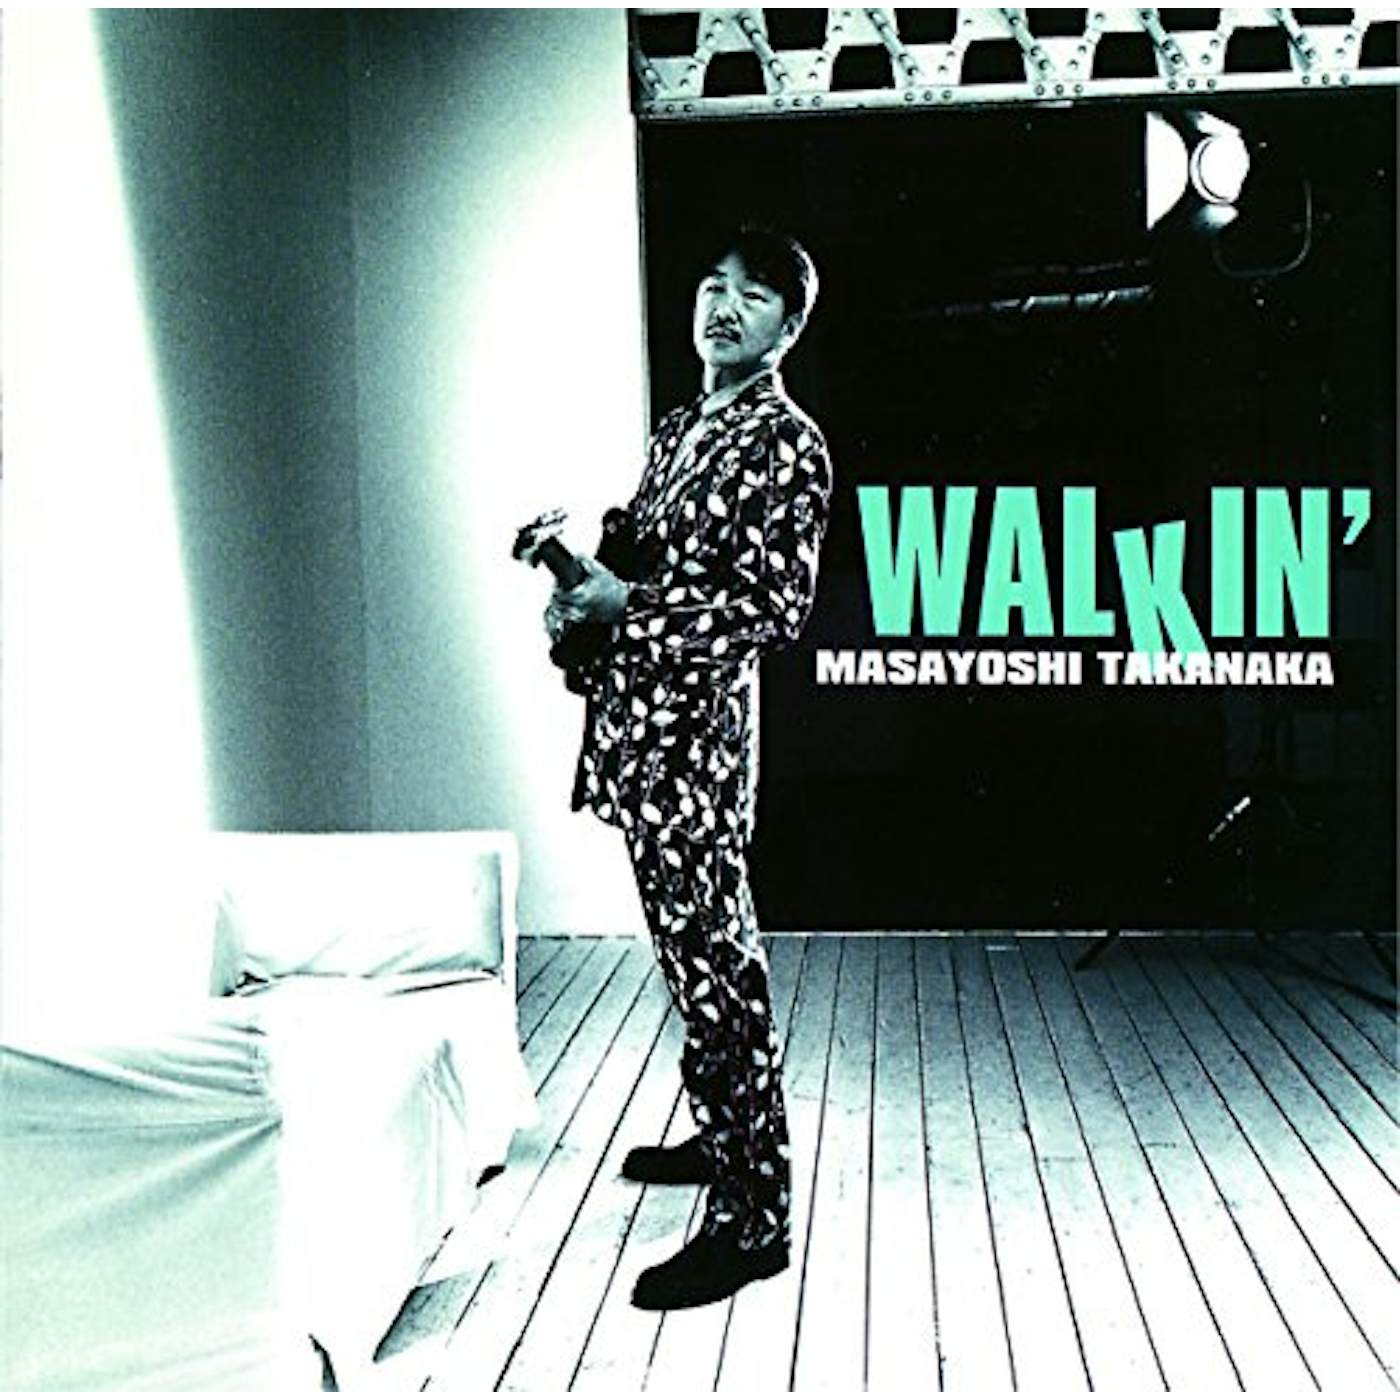 Masayoshi Takanaka WALKIN' CD